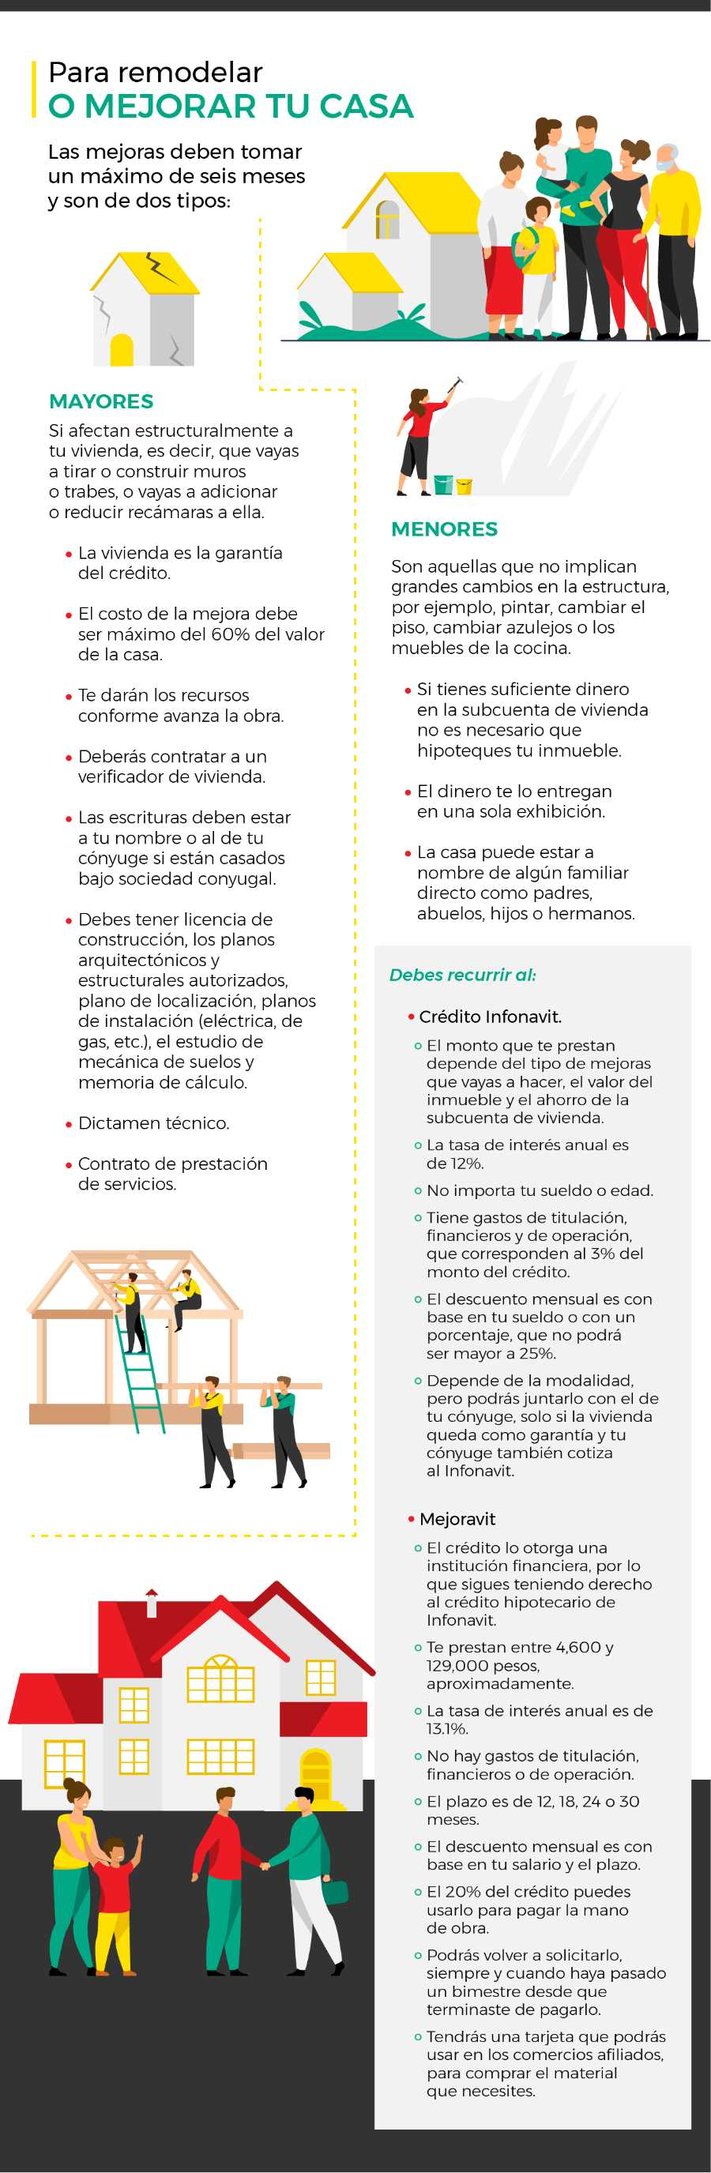 Infografia_Se_puede_usar_la_subcuenta_de_vivienda_para_remodelar_tu_casa-1